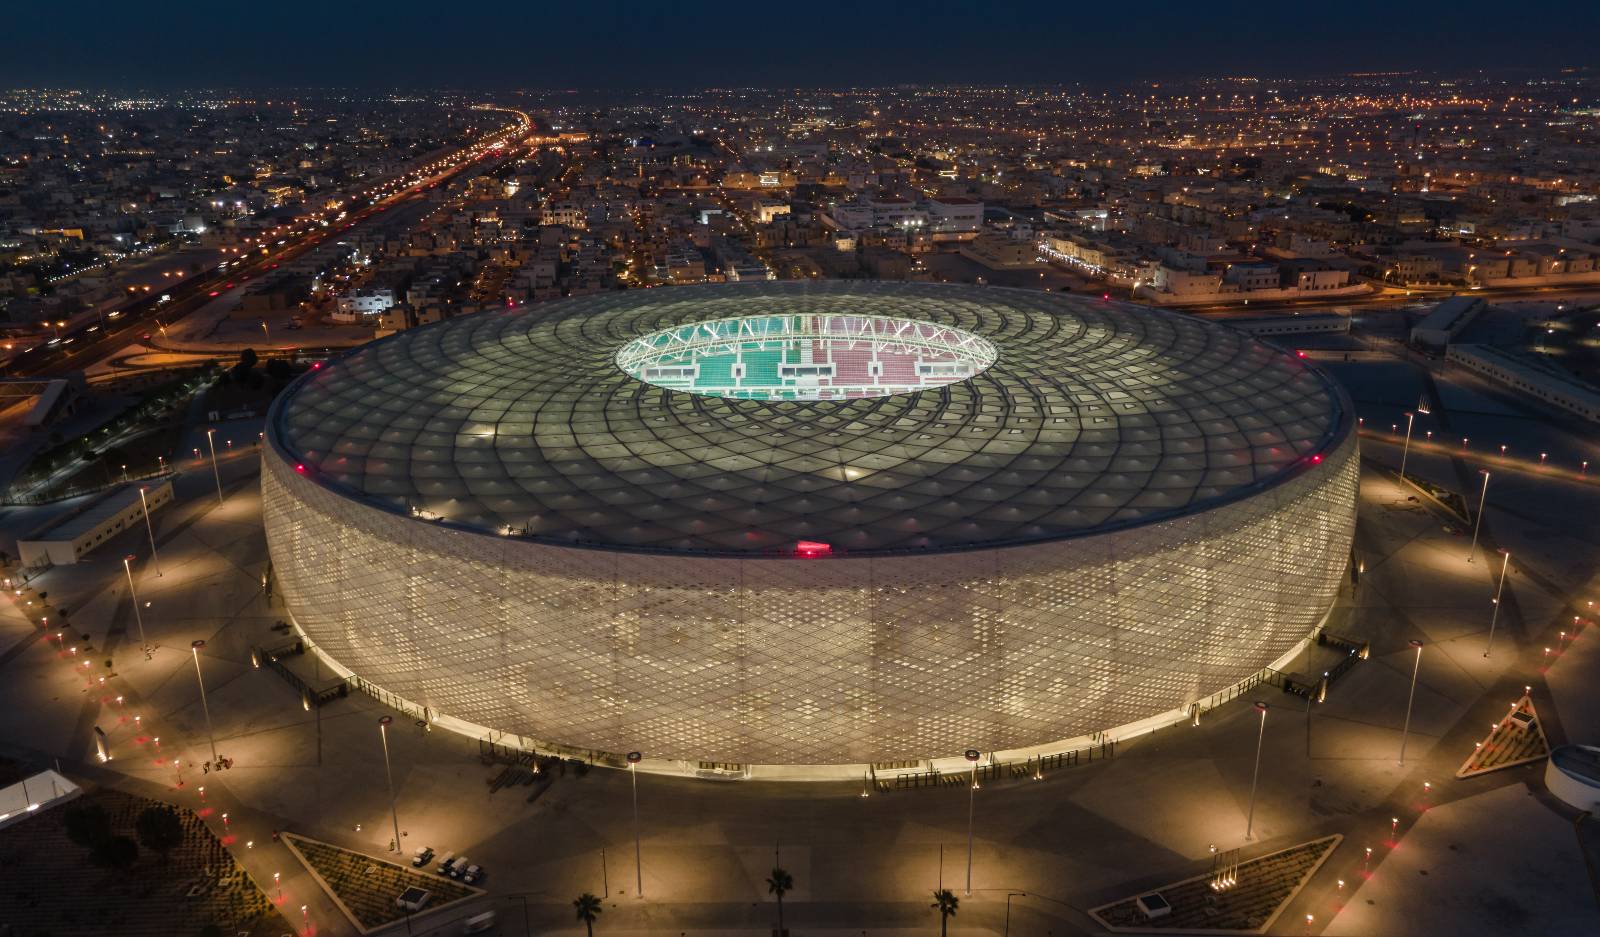 Aerial view of Al Thumama stadium in Qatar.